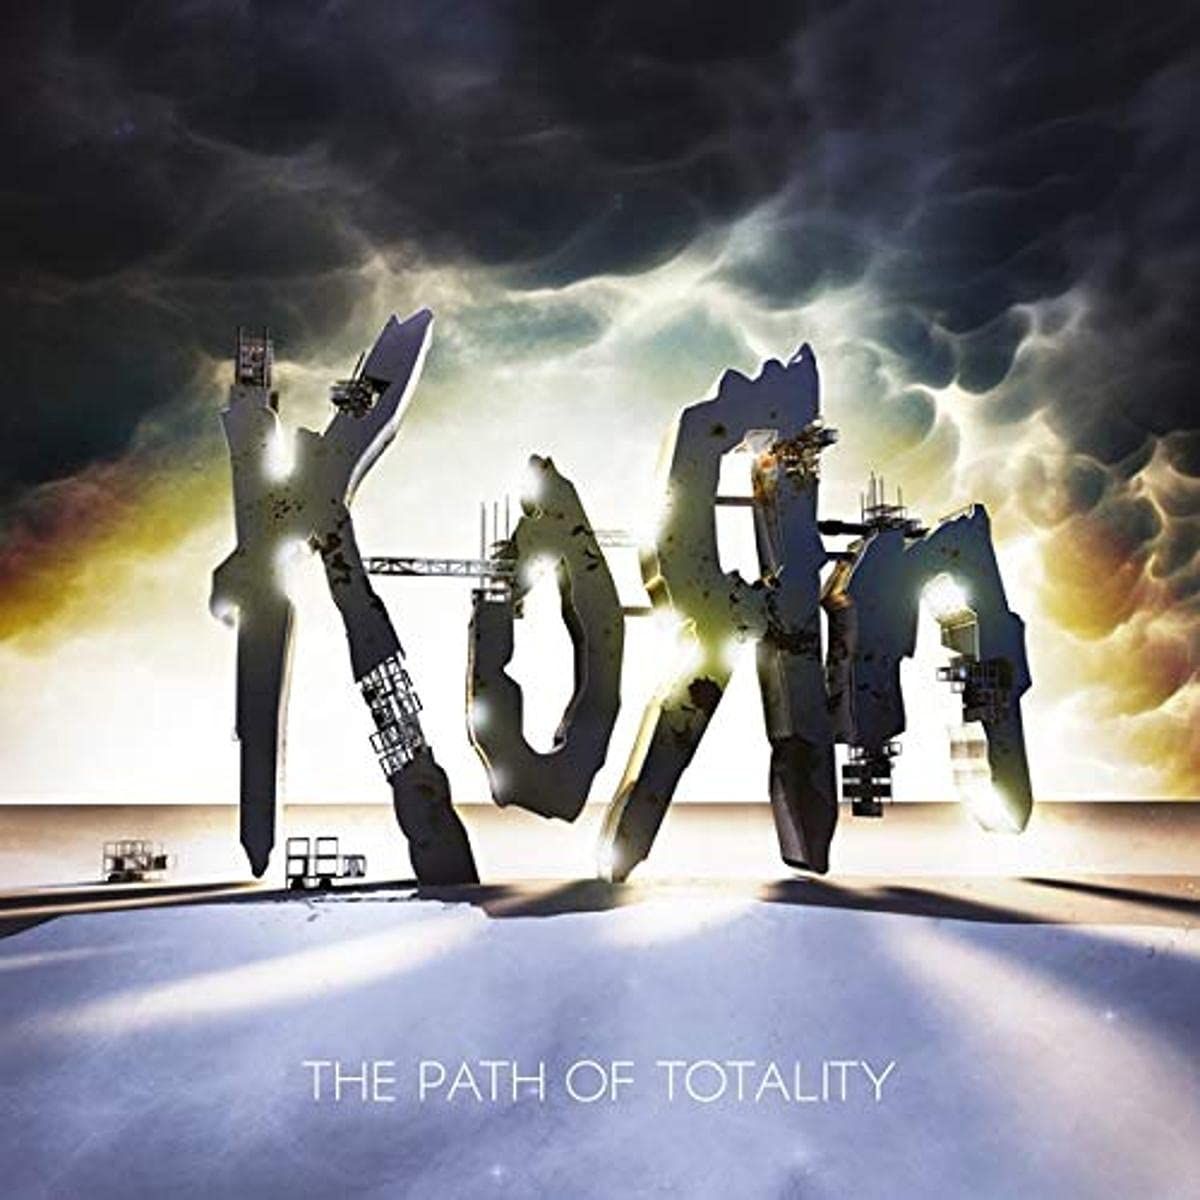 Korn - Path Of Totality, The (2020 180g gatefold reissue) - Vinyl - New